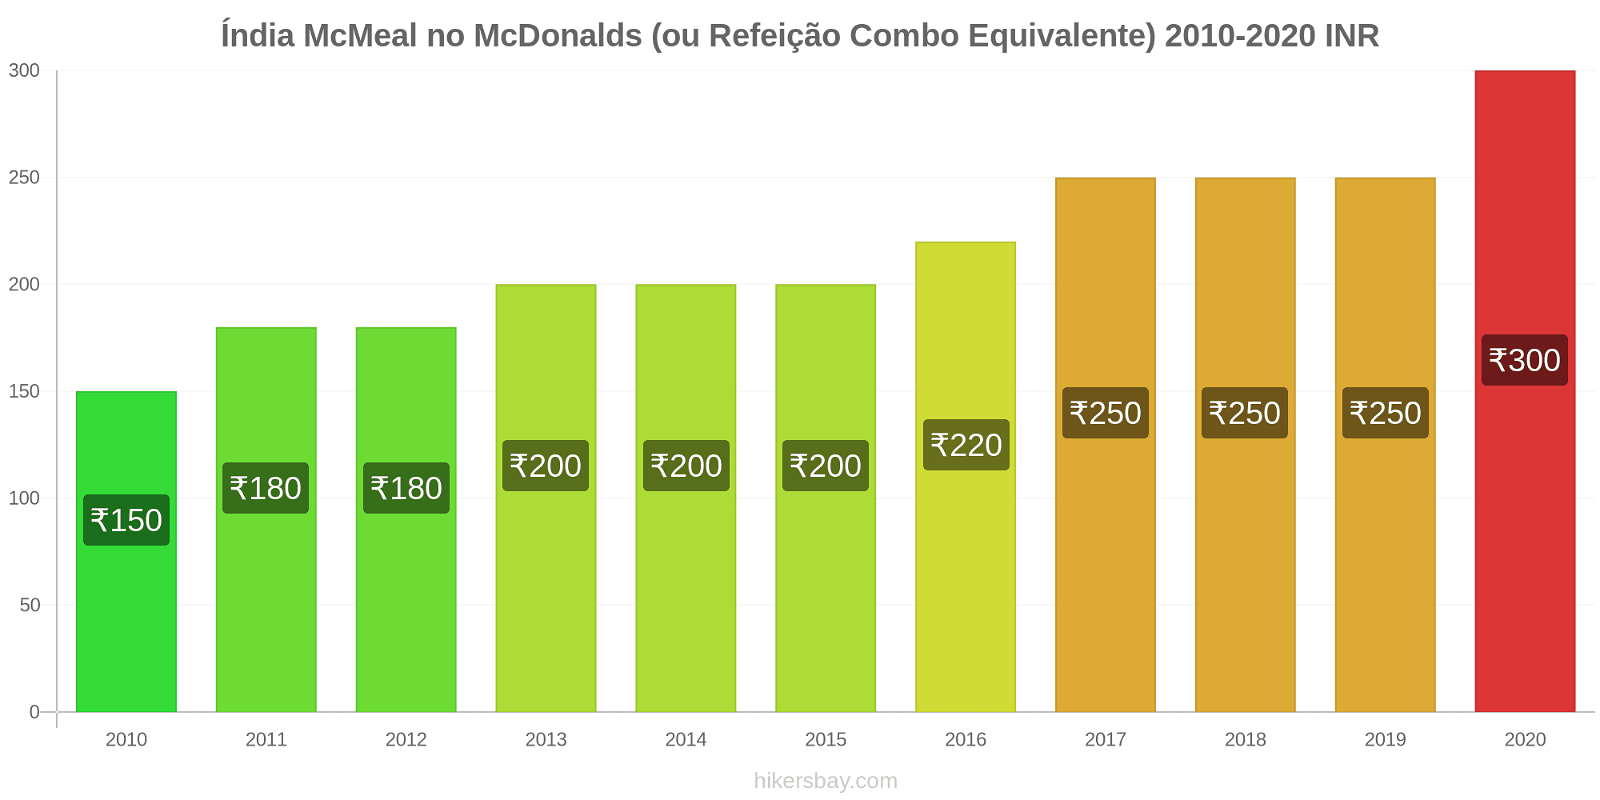 Índia variação de preço McMeal no McDonald ' s (ou refeição Combo equivalente) hikersbay.com